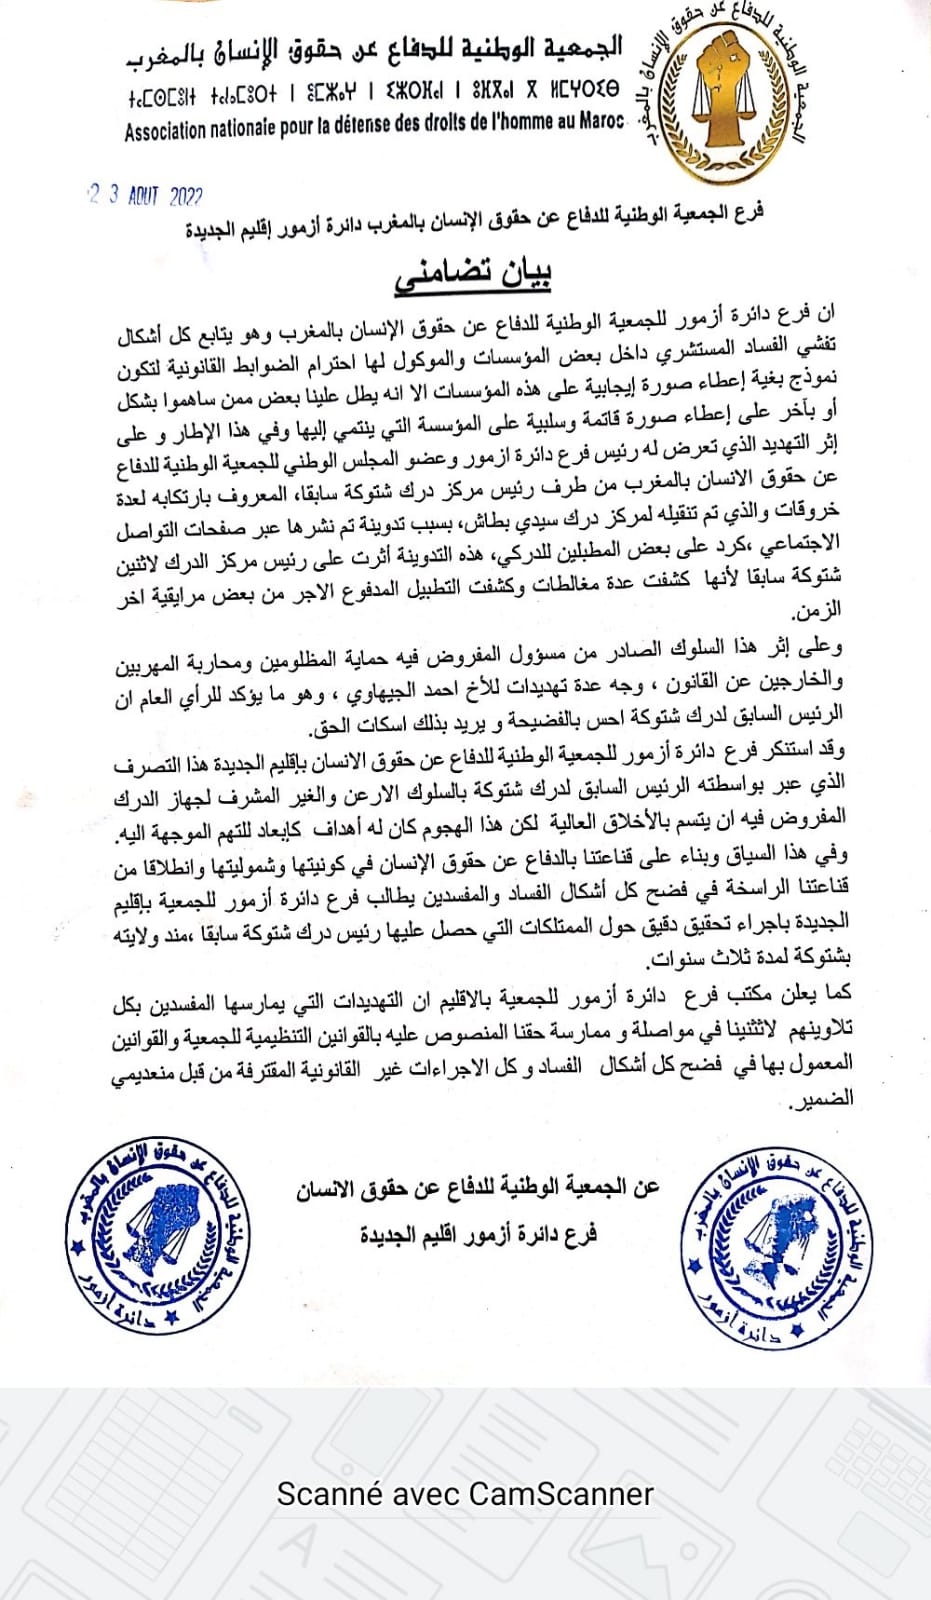 بيان استنكاري لفرع الجمعية الوطنية للدفاع عن حقوق الإنسان بالمغرب دائرة أزمور إقليم الجديدة 